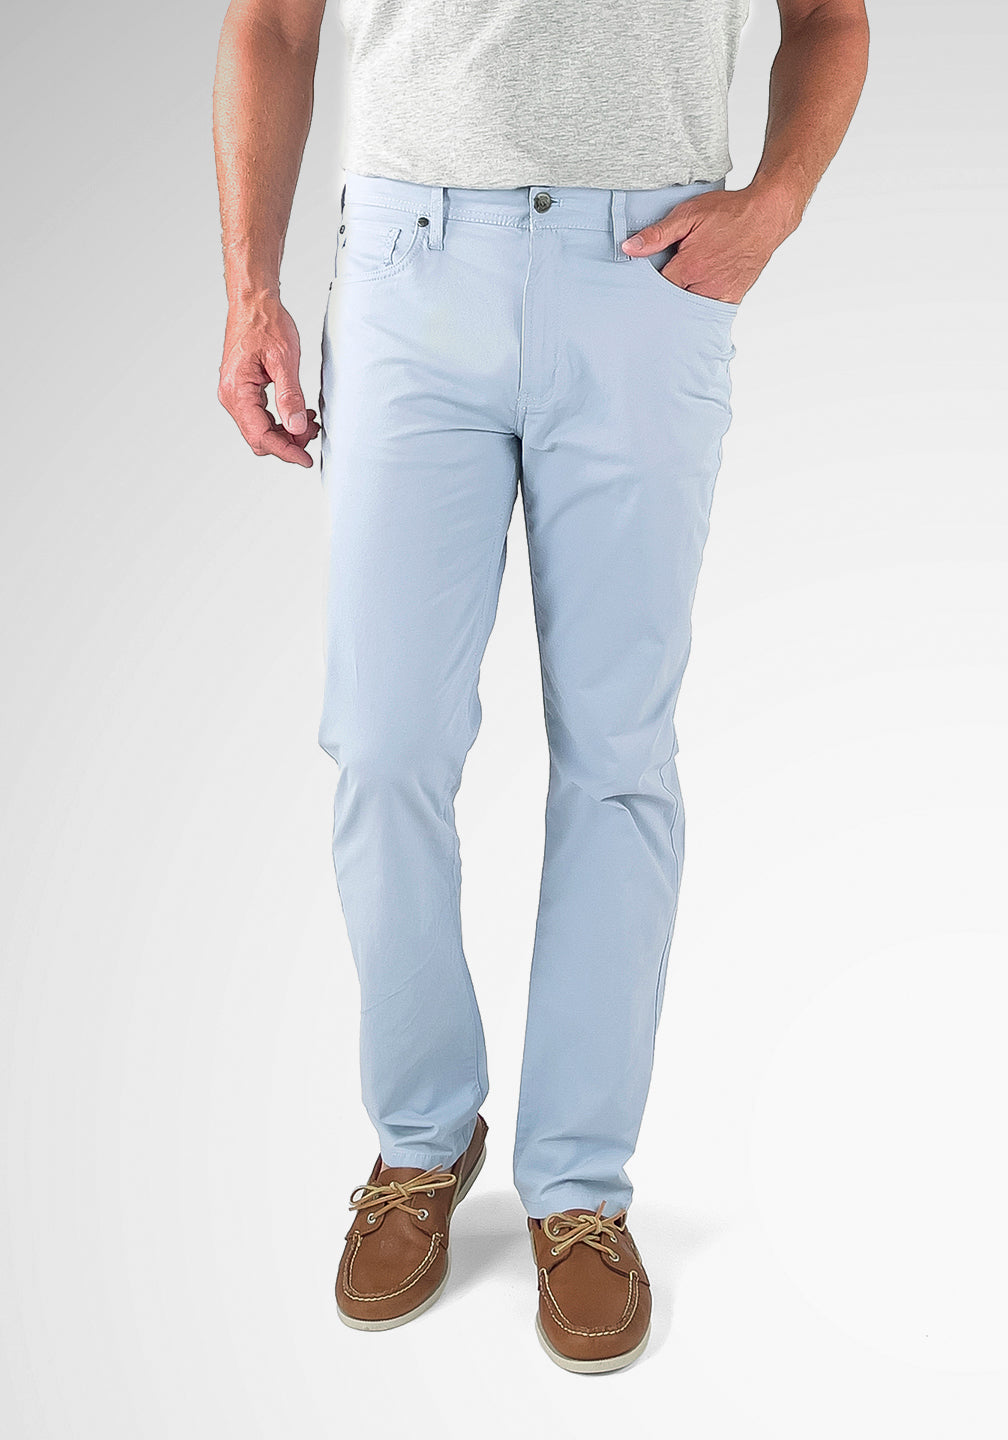 – Pants 5-Pocket Airotec® Tailor Cotton/Nylon Fit Vintage Athletic